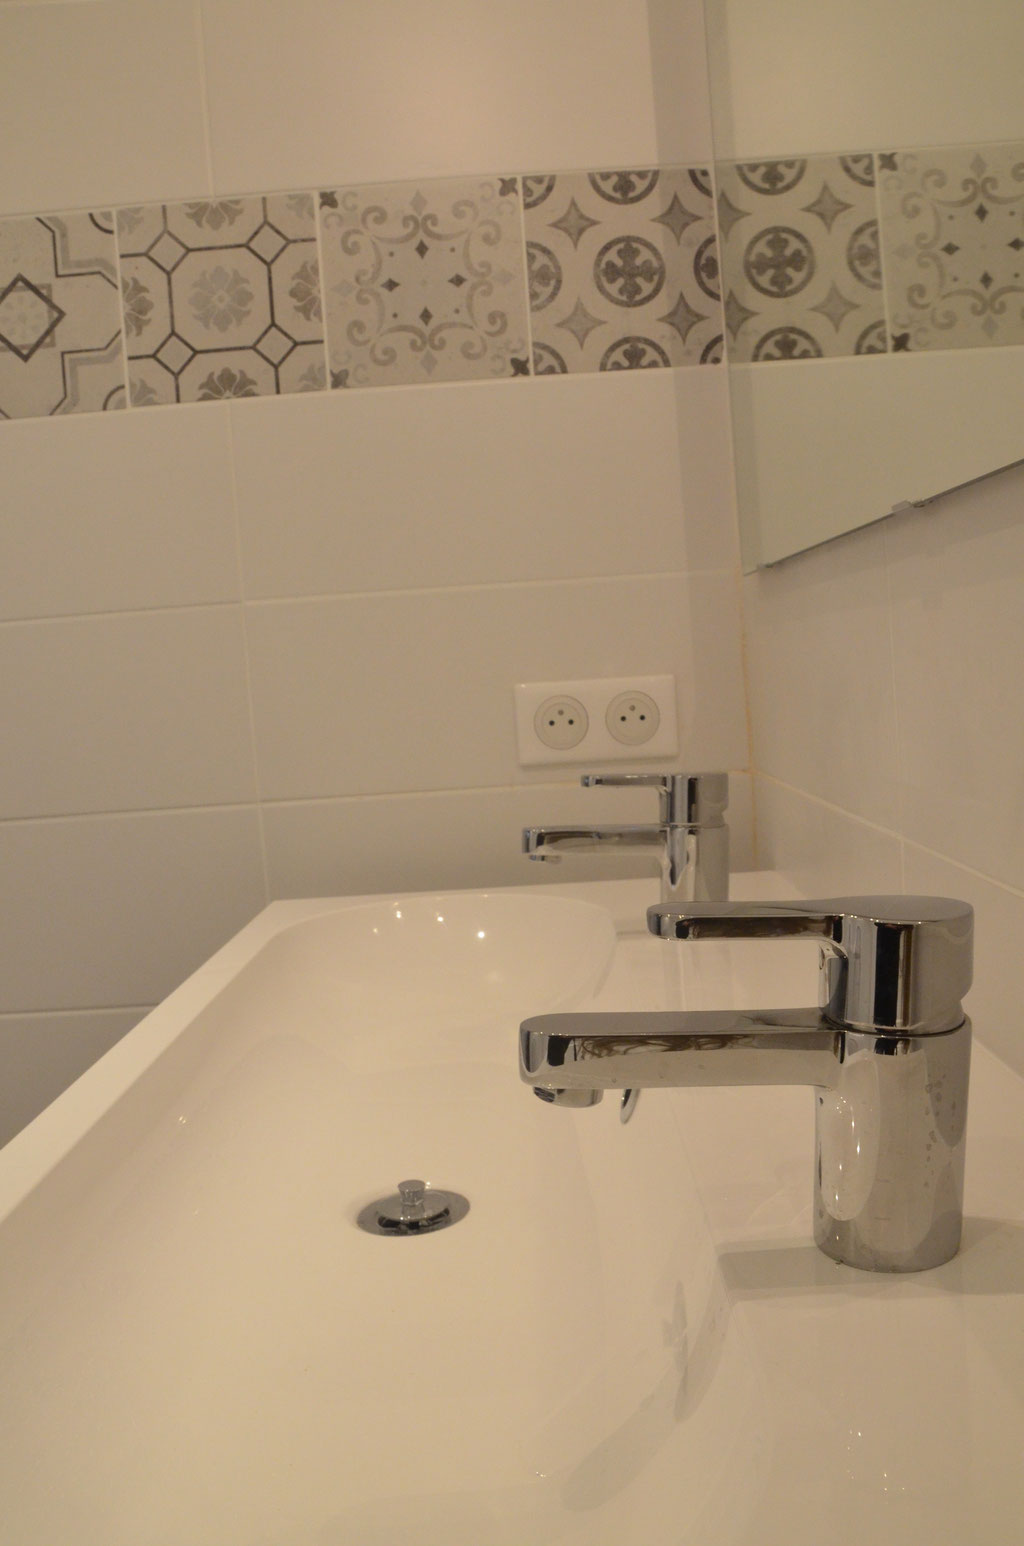 AL Intérieurs, agence architecture intérieur et décoration lyon, rénovation d'une salle de bains design avec carreaux de ciments